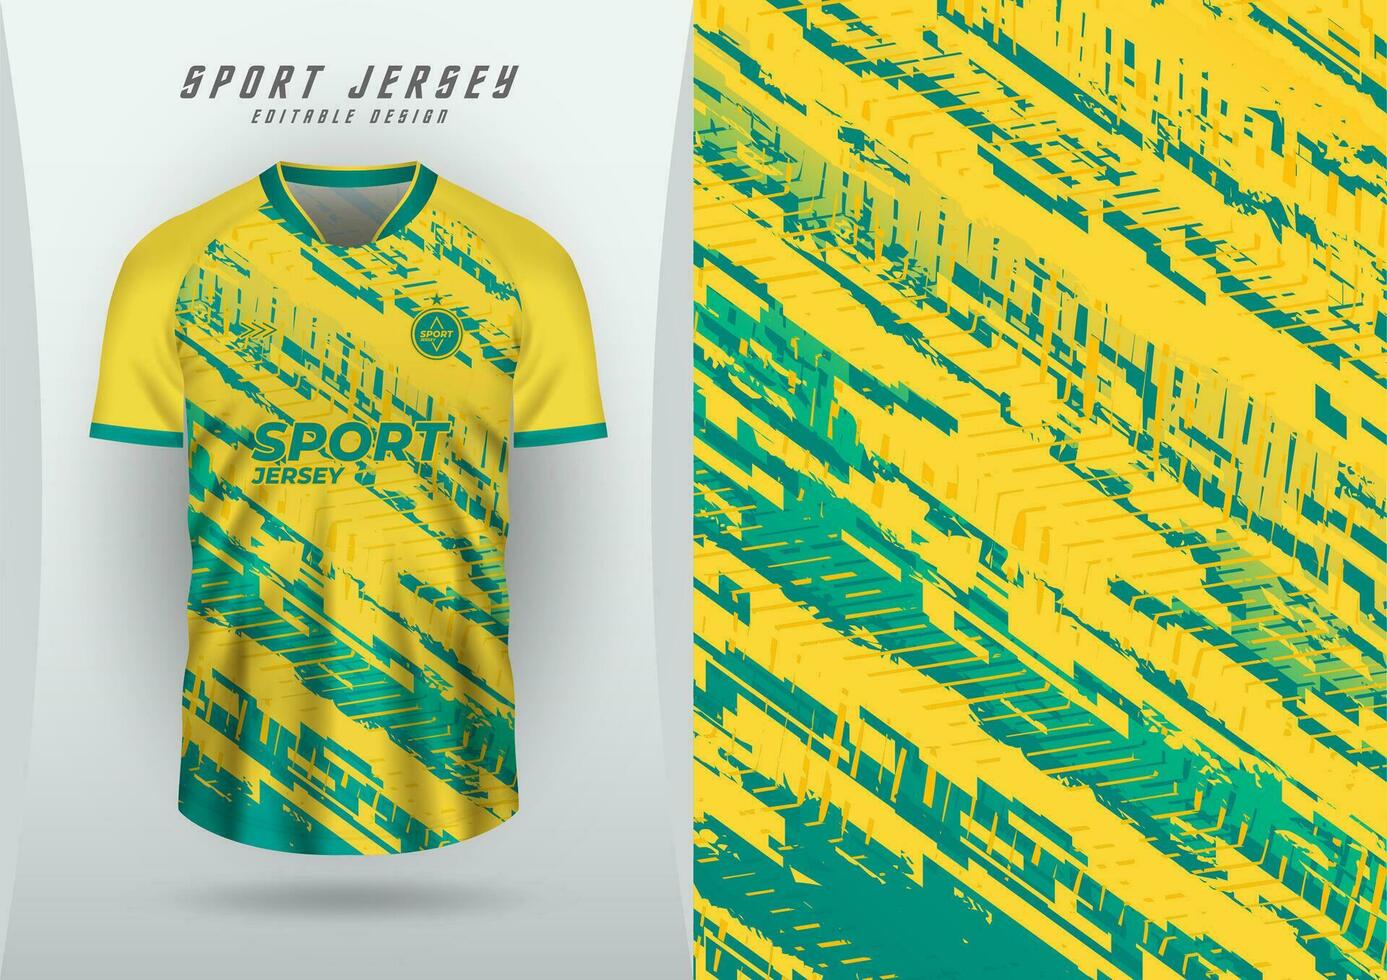 achtergrond voor sport- Jersey, voetbal Jersey, rennen Jersey, racing Jersey, patroon, geel en groente. vector